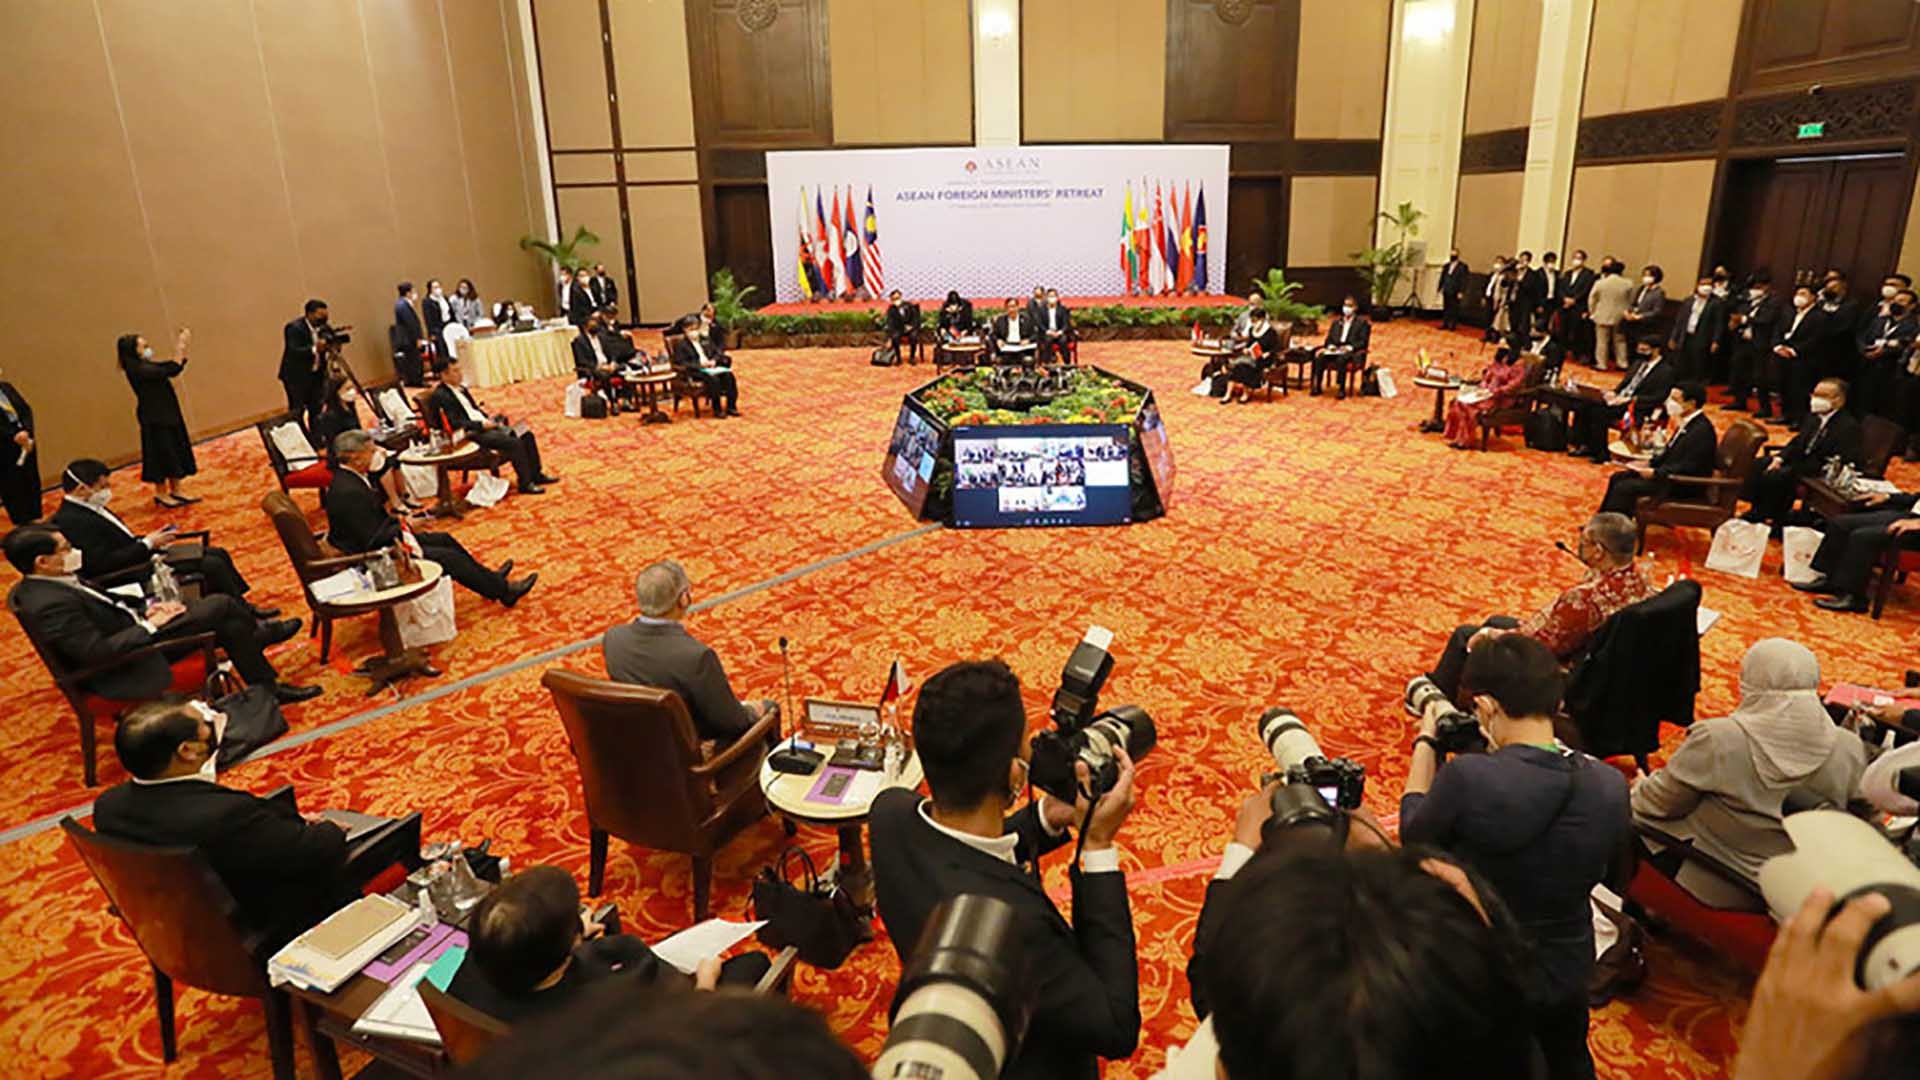 Hội nghị hẹp Bộ trưởng Ngoại giao ASEAN tại Campuchia